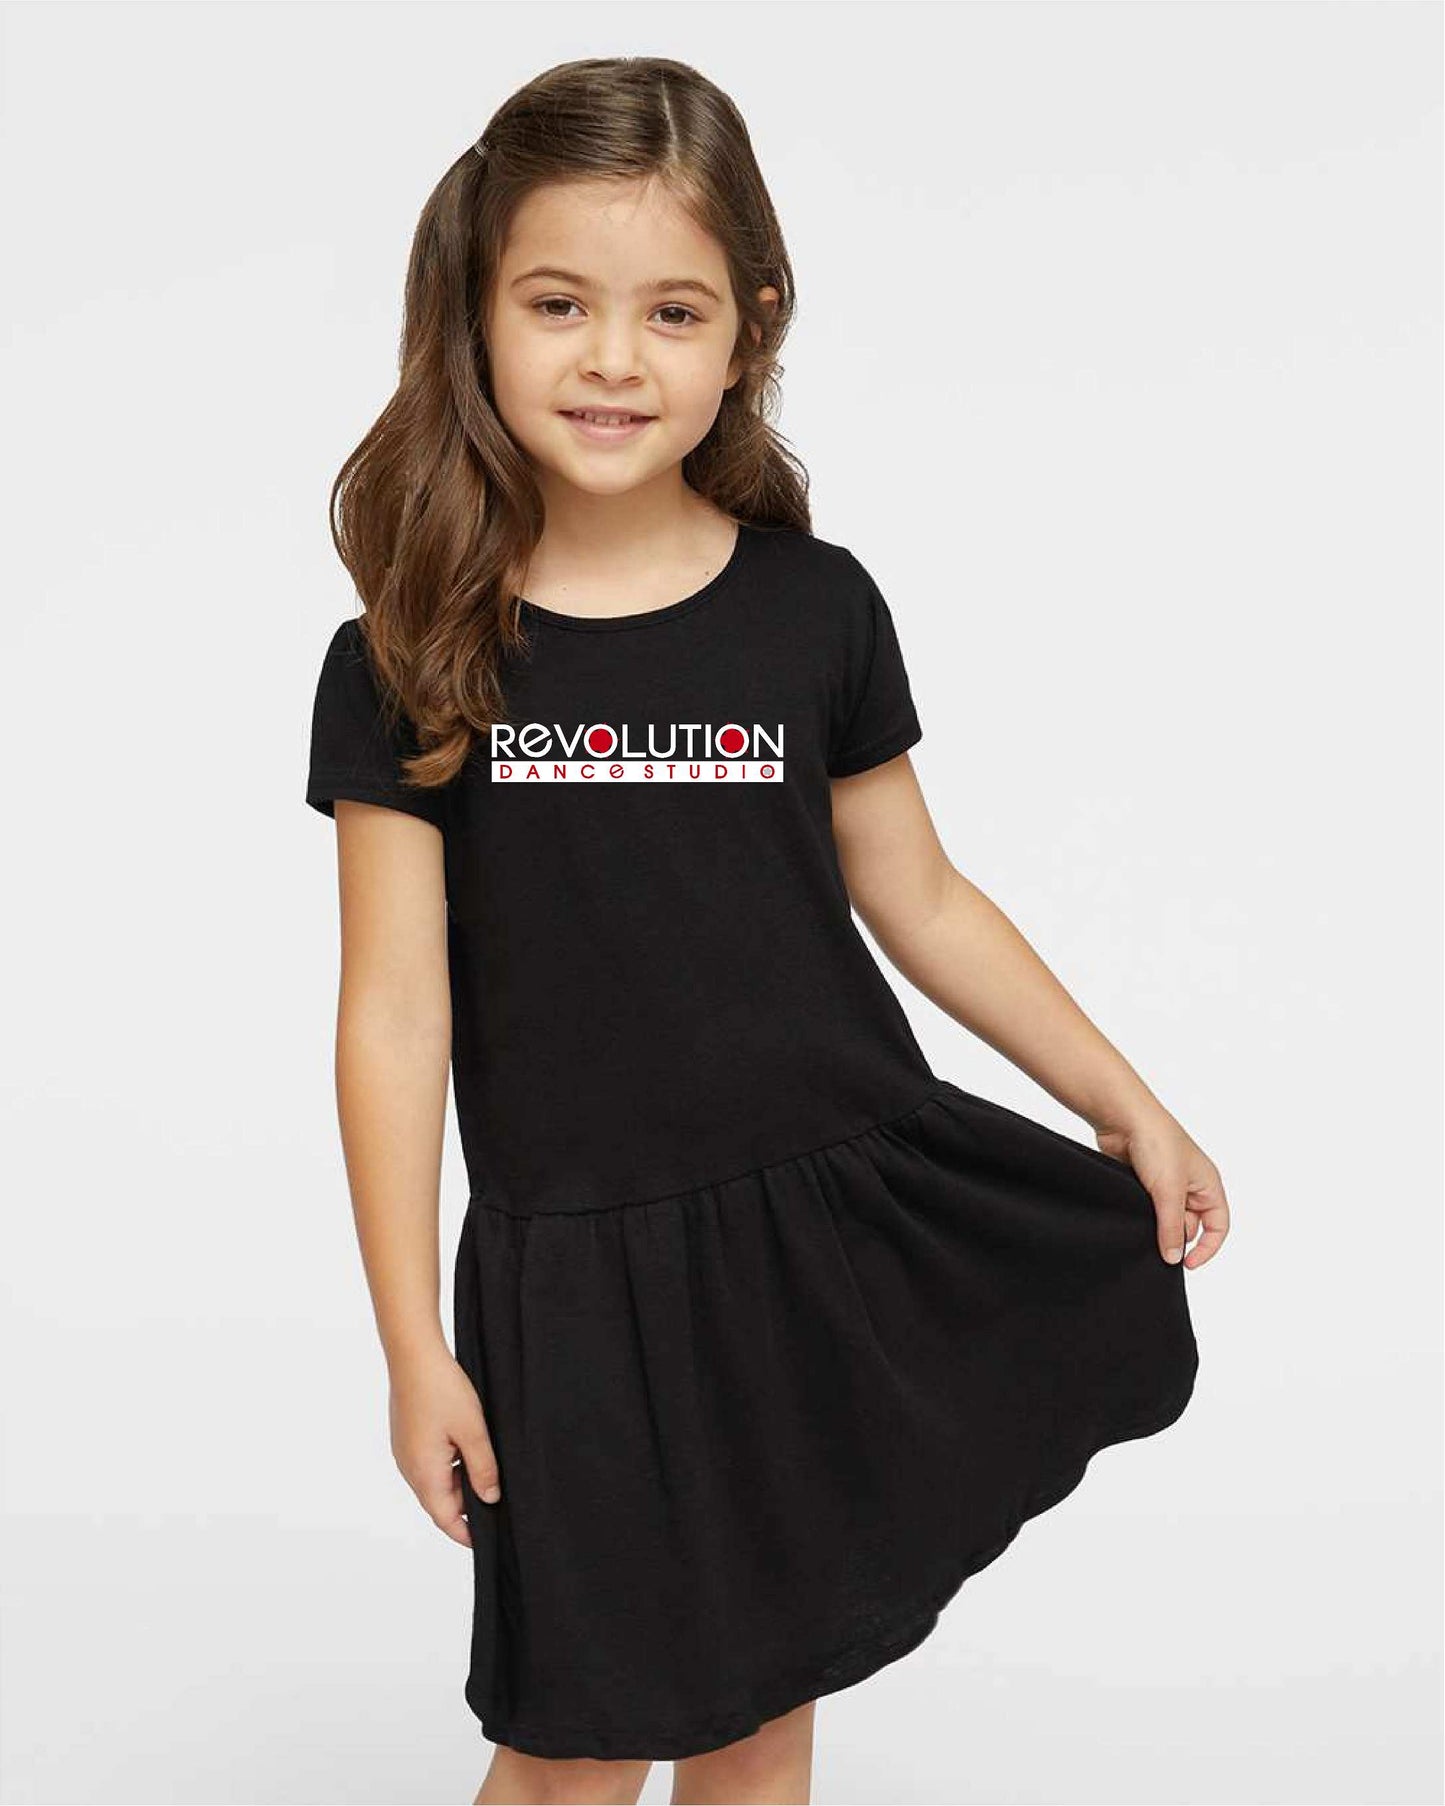 Revolution Dance Little Girl's tshirt dress S&S 5323